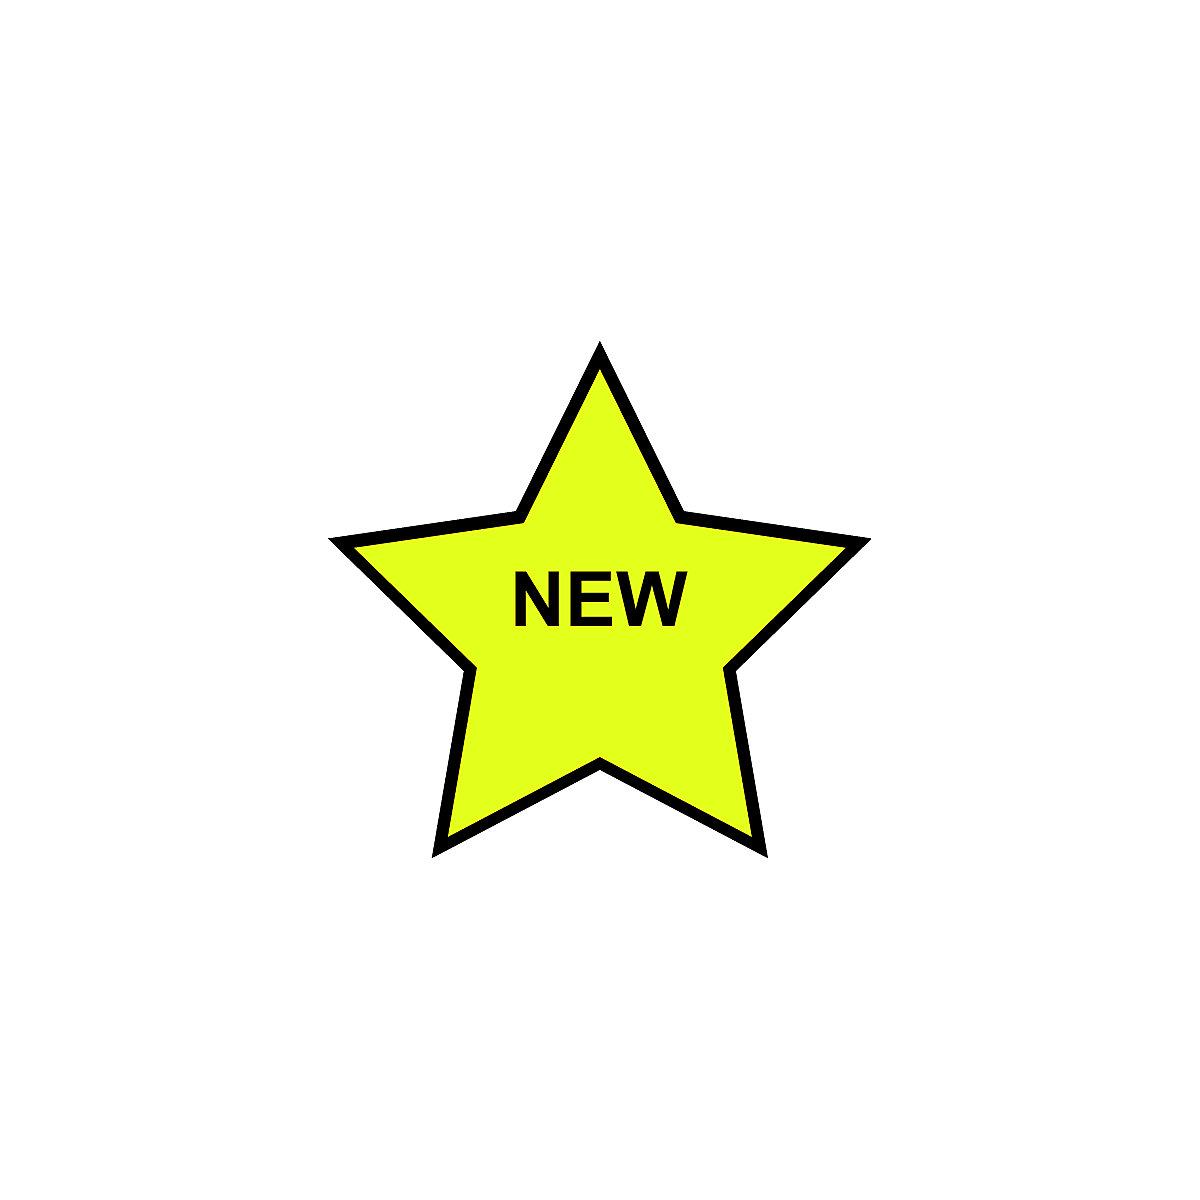 NEW STAR mágneses szimbólum